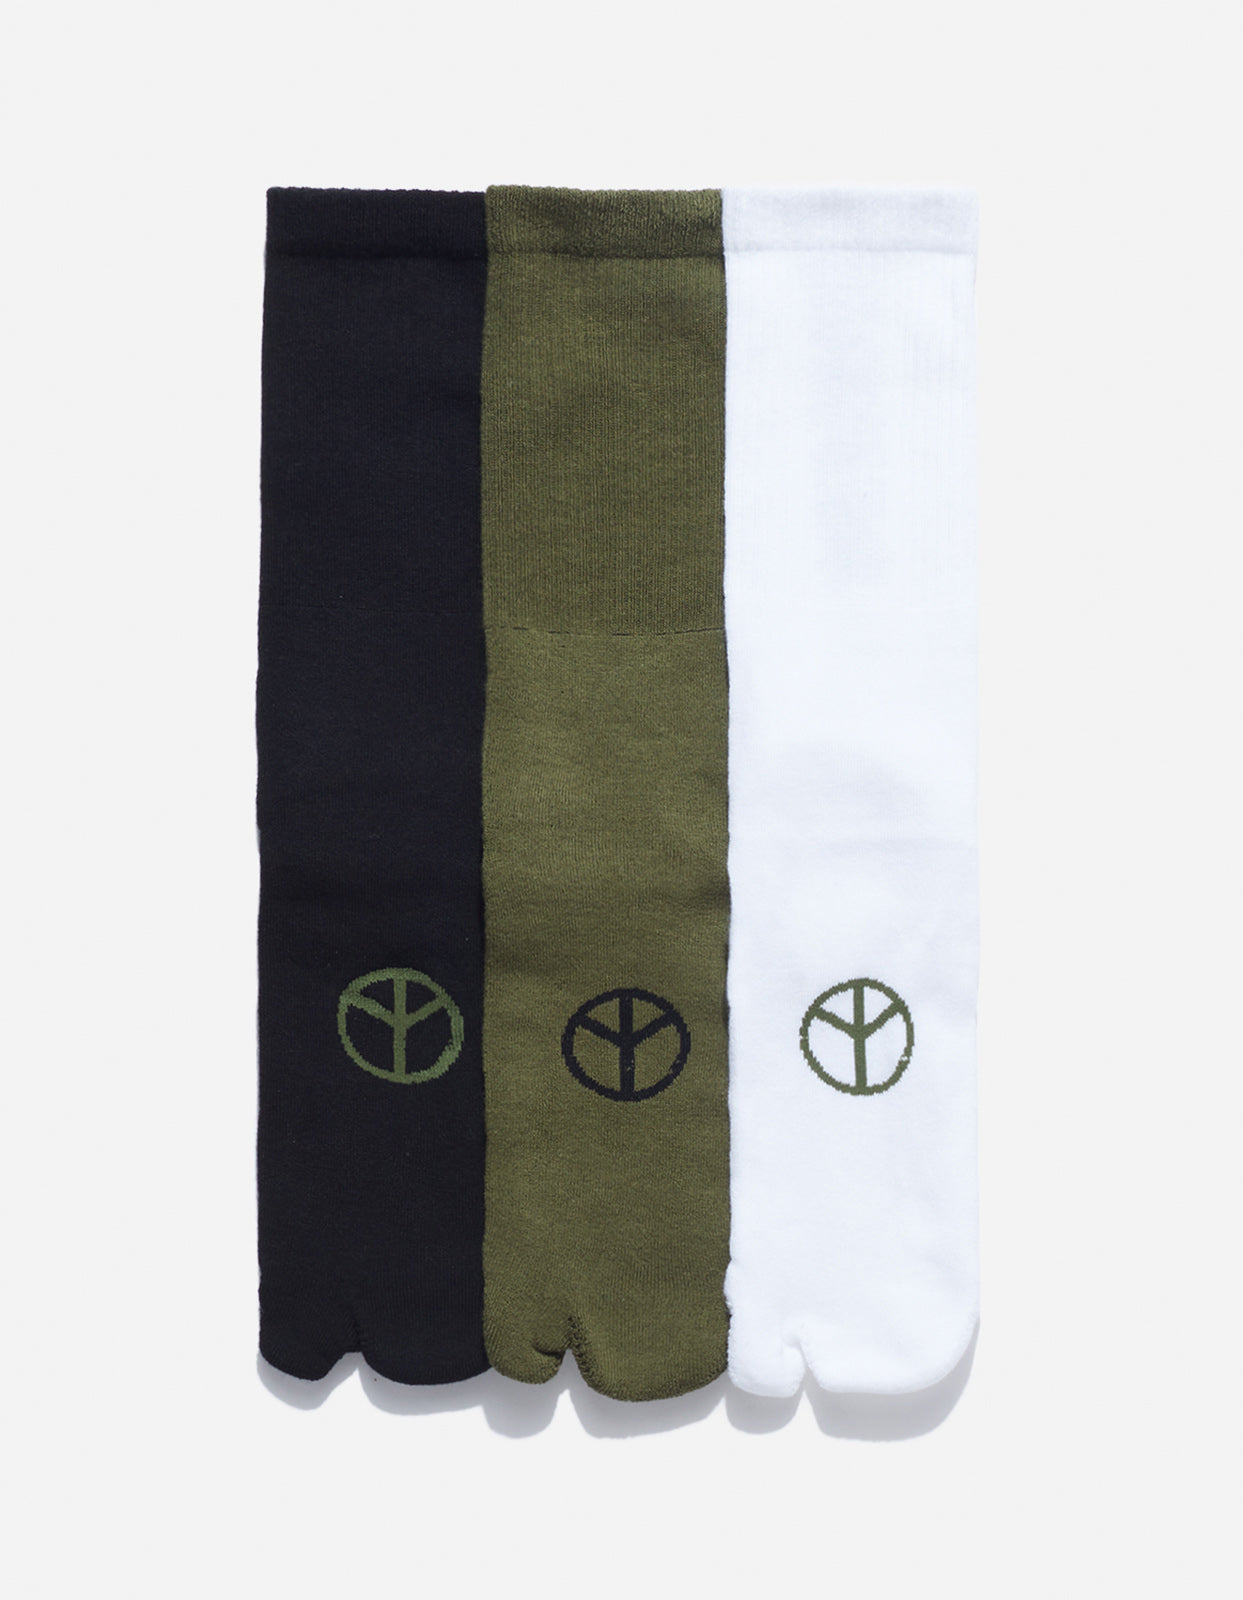 Maharishi  MILTYPE Peace Tabi Sports Socks · 3 Pack Black/Olive/White